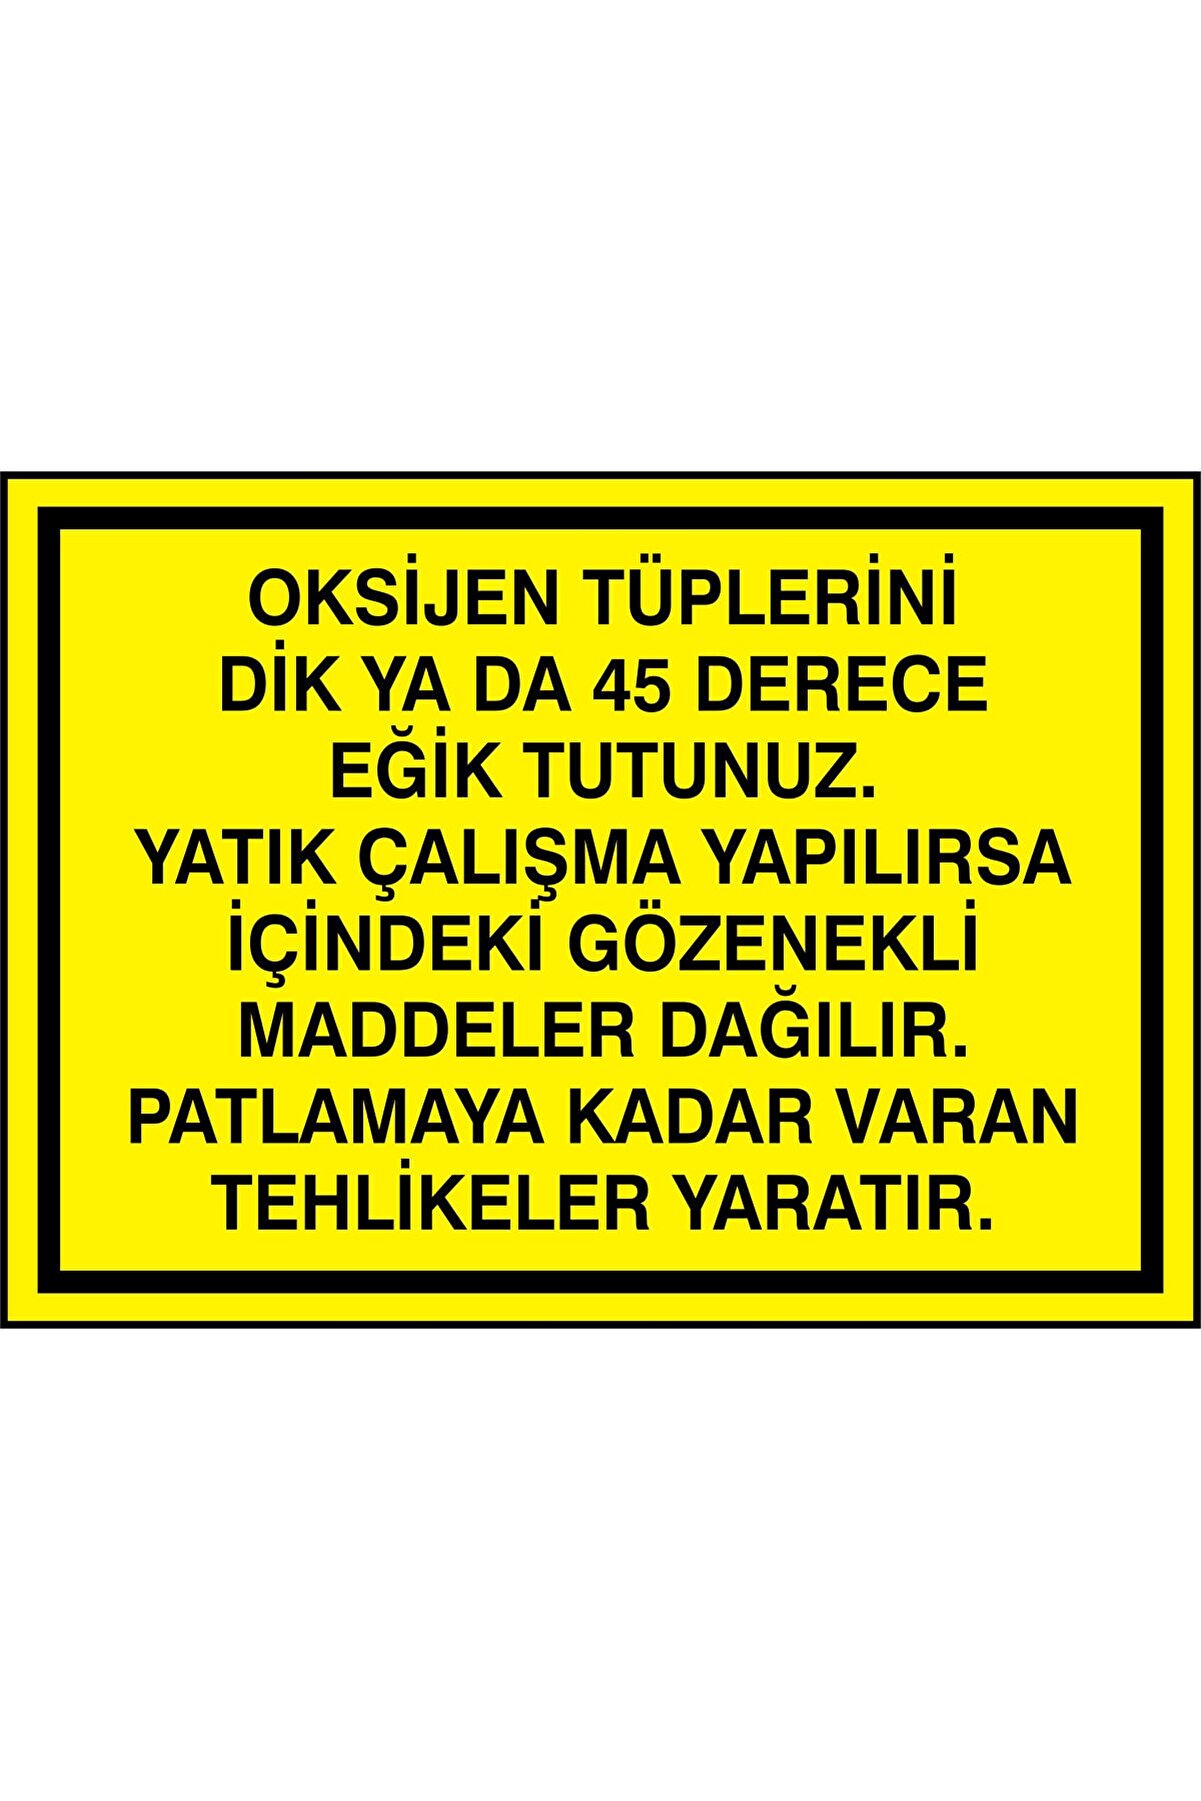 İzmir Serigrafi Oksijen Tüplerini Dik Yada 45 Derece Eğik Tutunuz 3mm Dekota Uyarı Levhası 35 X 50 Cm